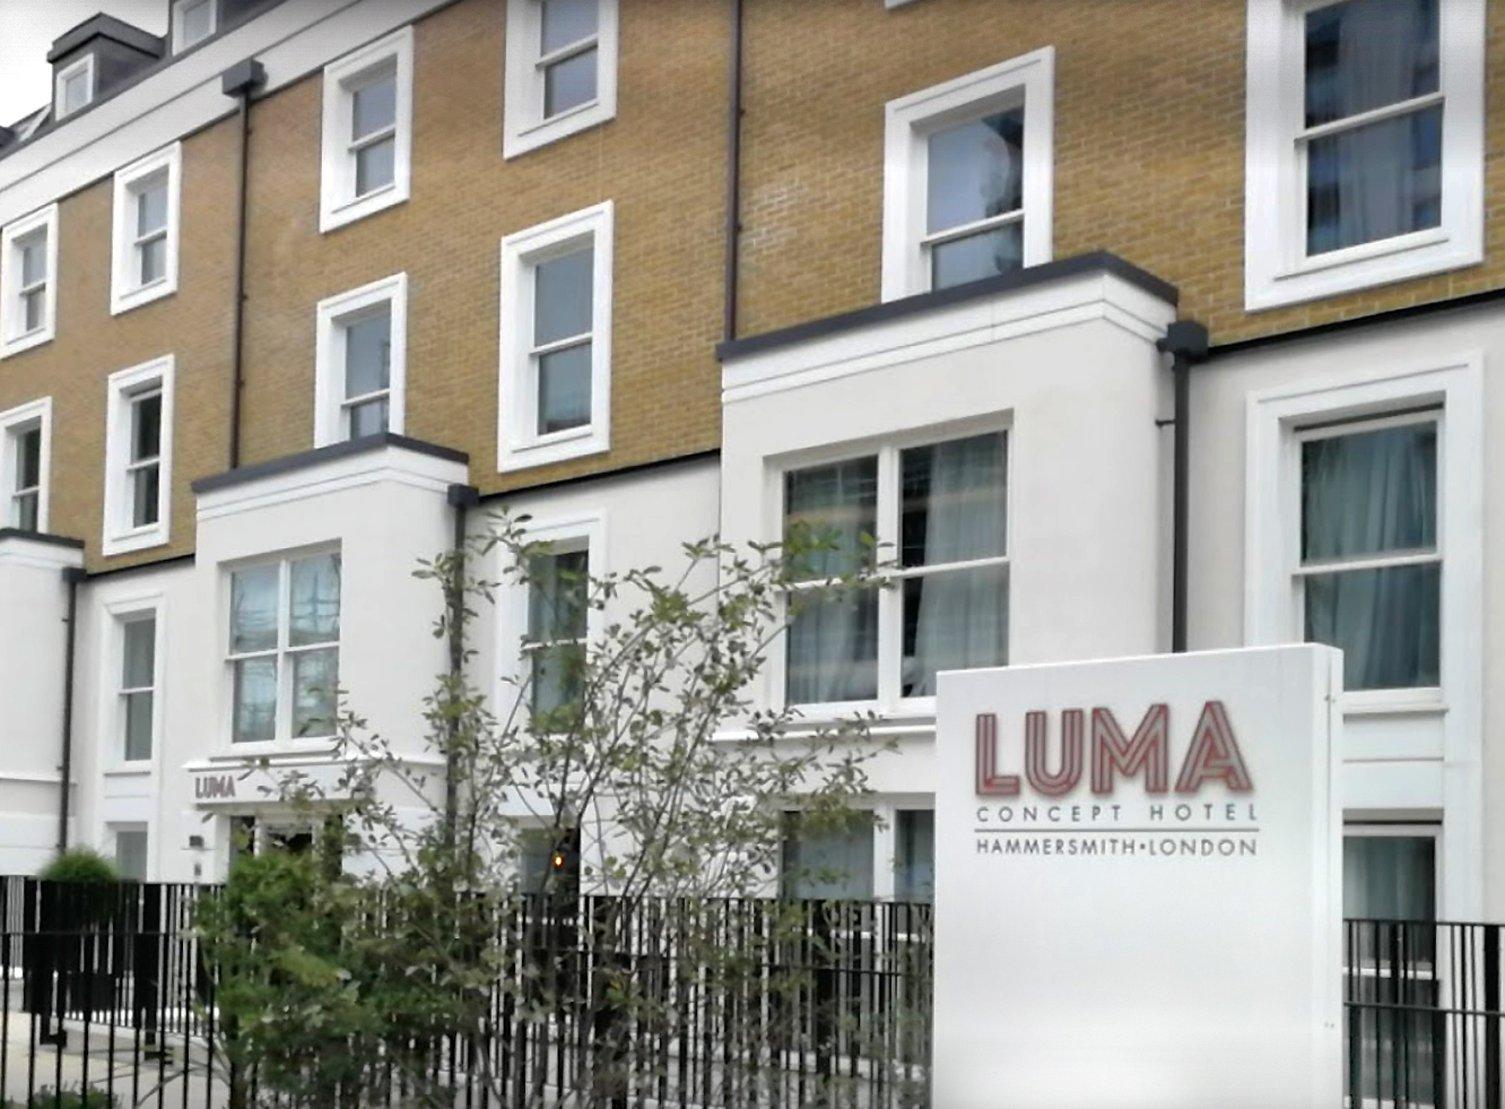 Luma Concept Hotel in London, GB1